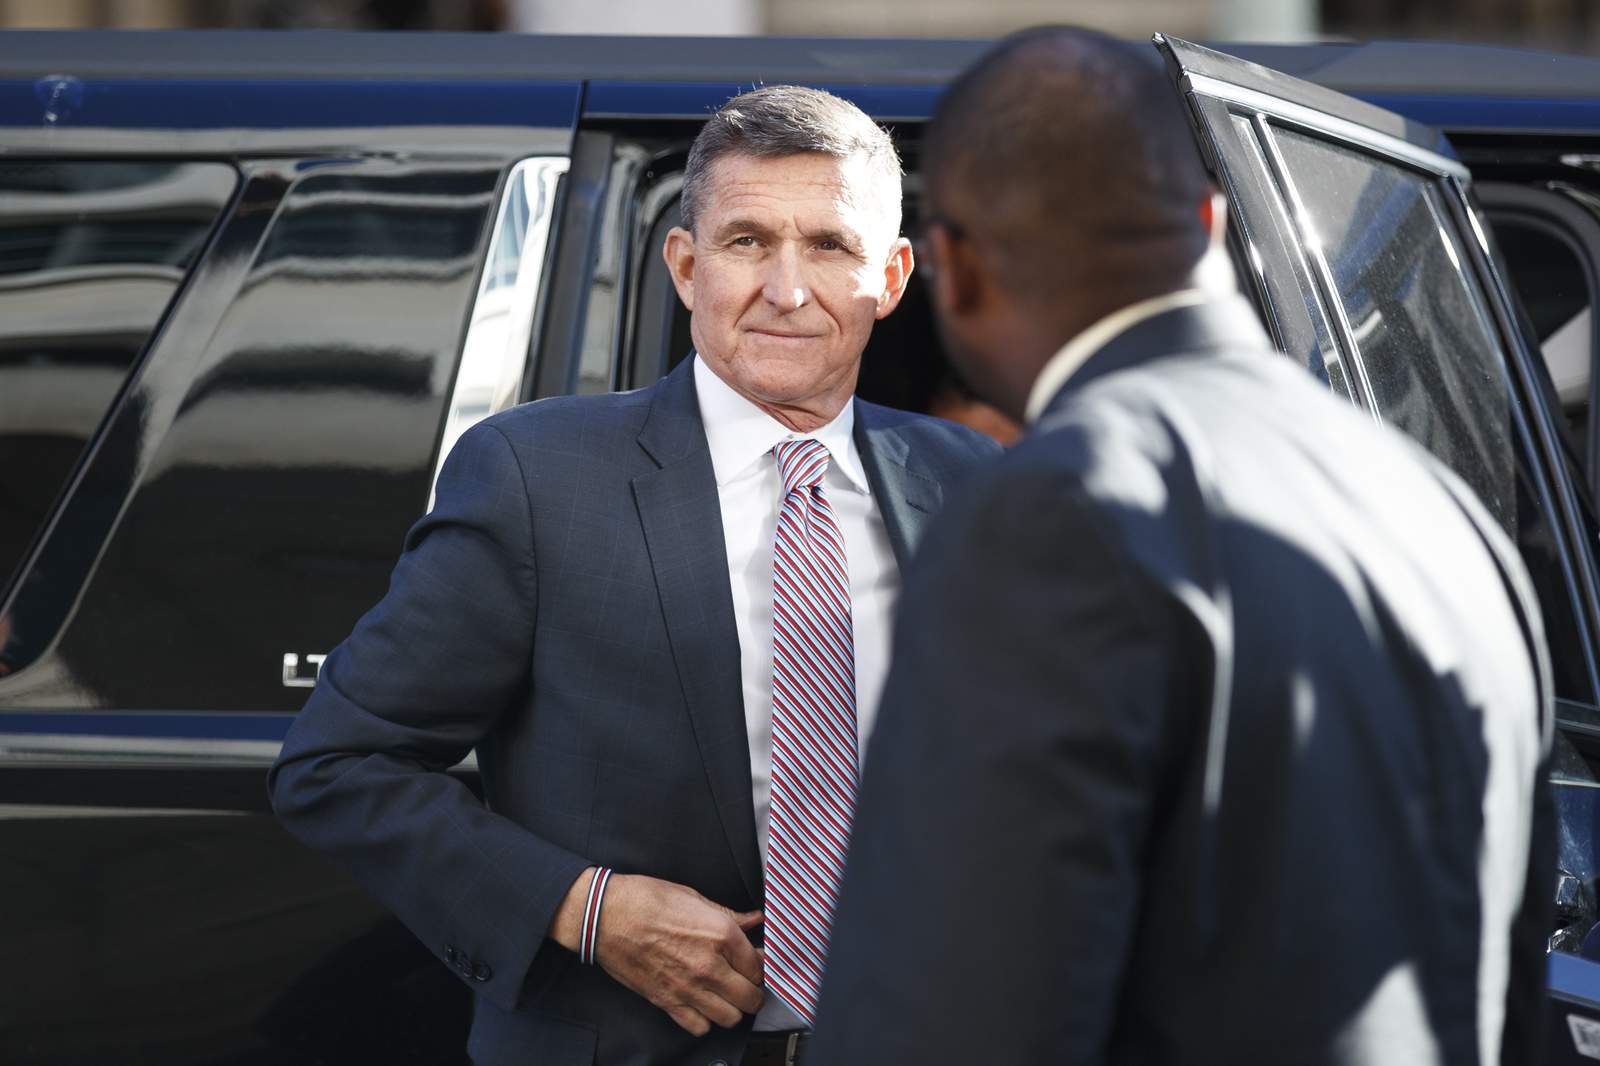 Trump pardons Flynn despite guilty plea in Russia probe